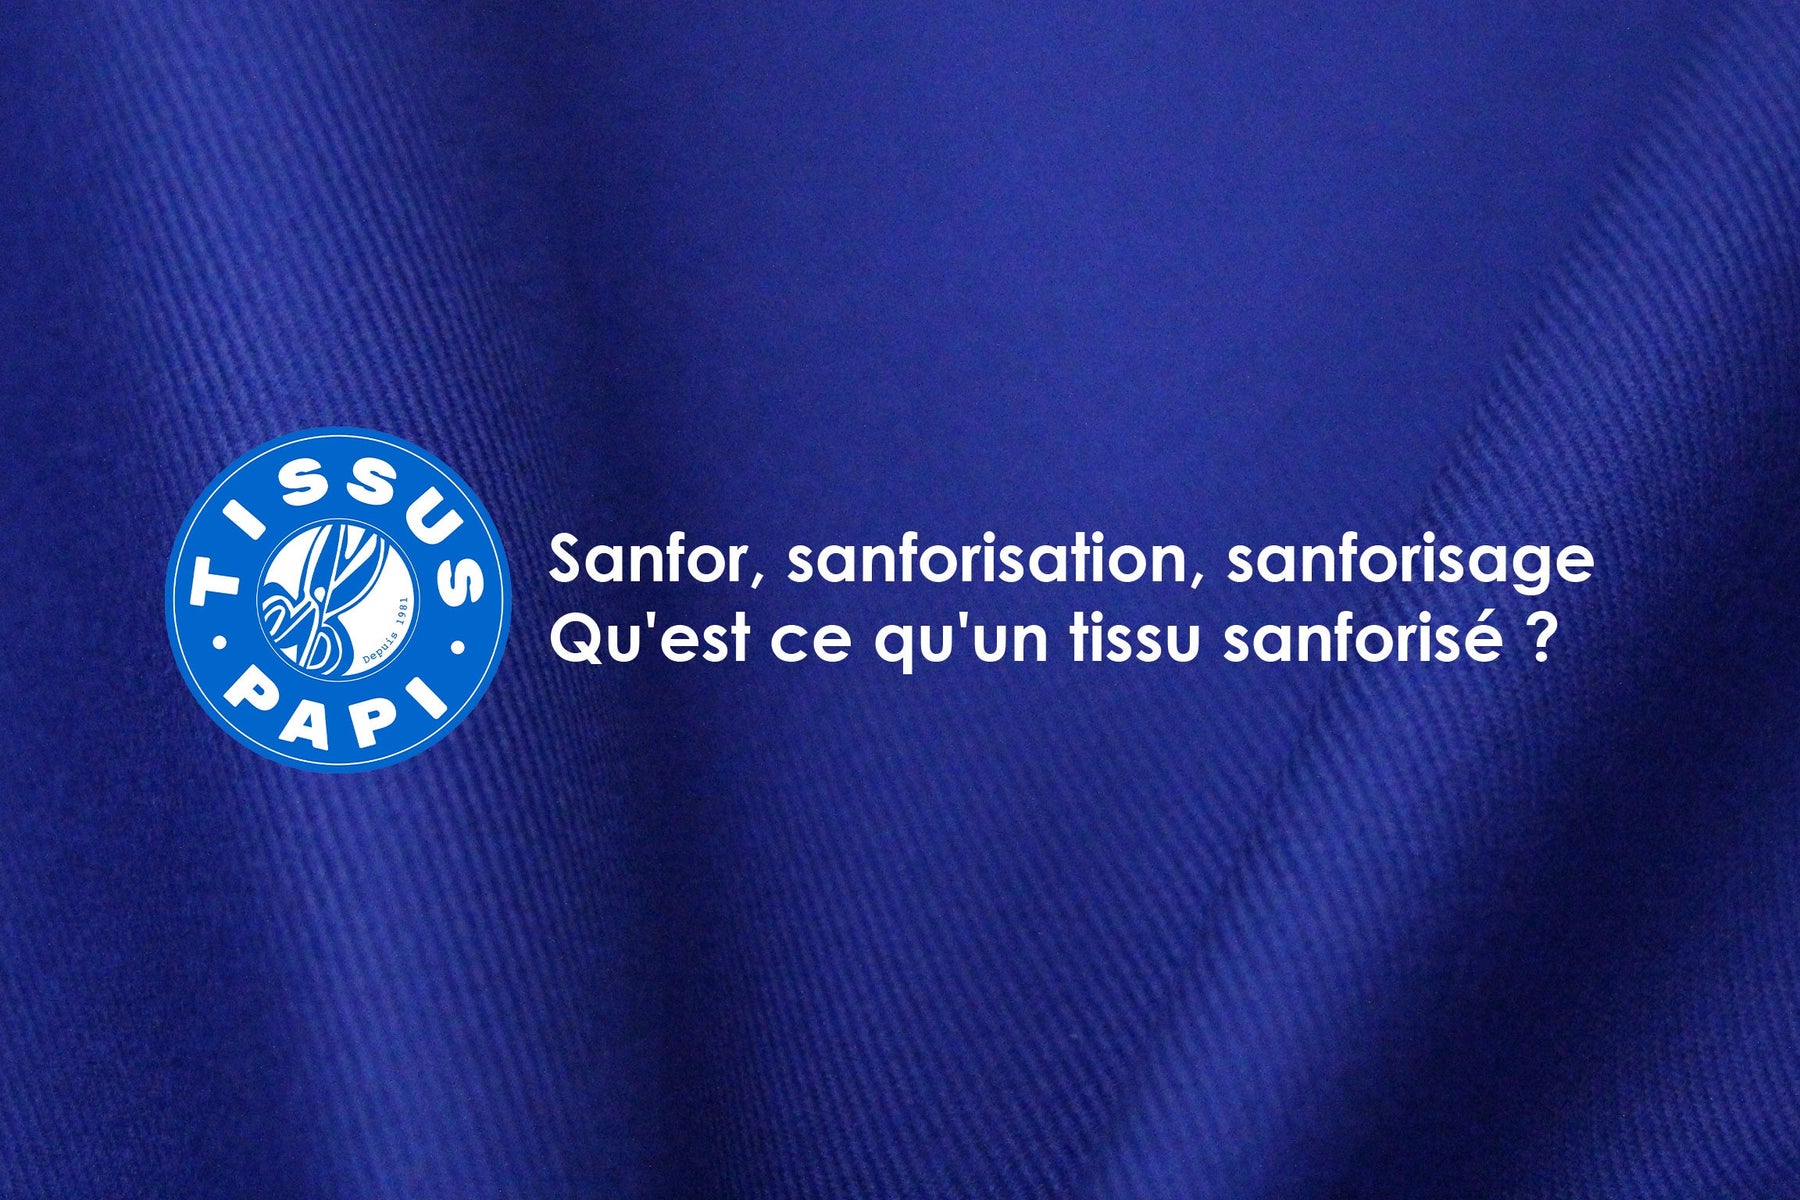 Sanfor, sanforisation, sanforisage : qu'est ce qu'un tissu sanforisé ?